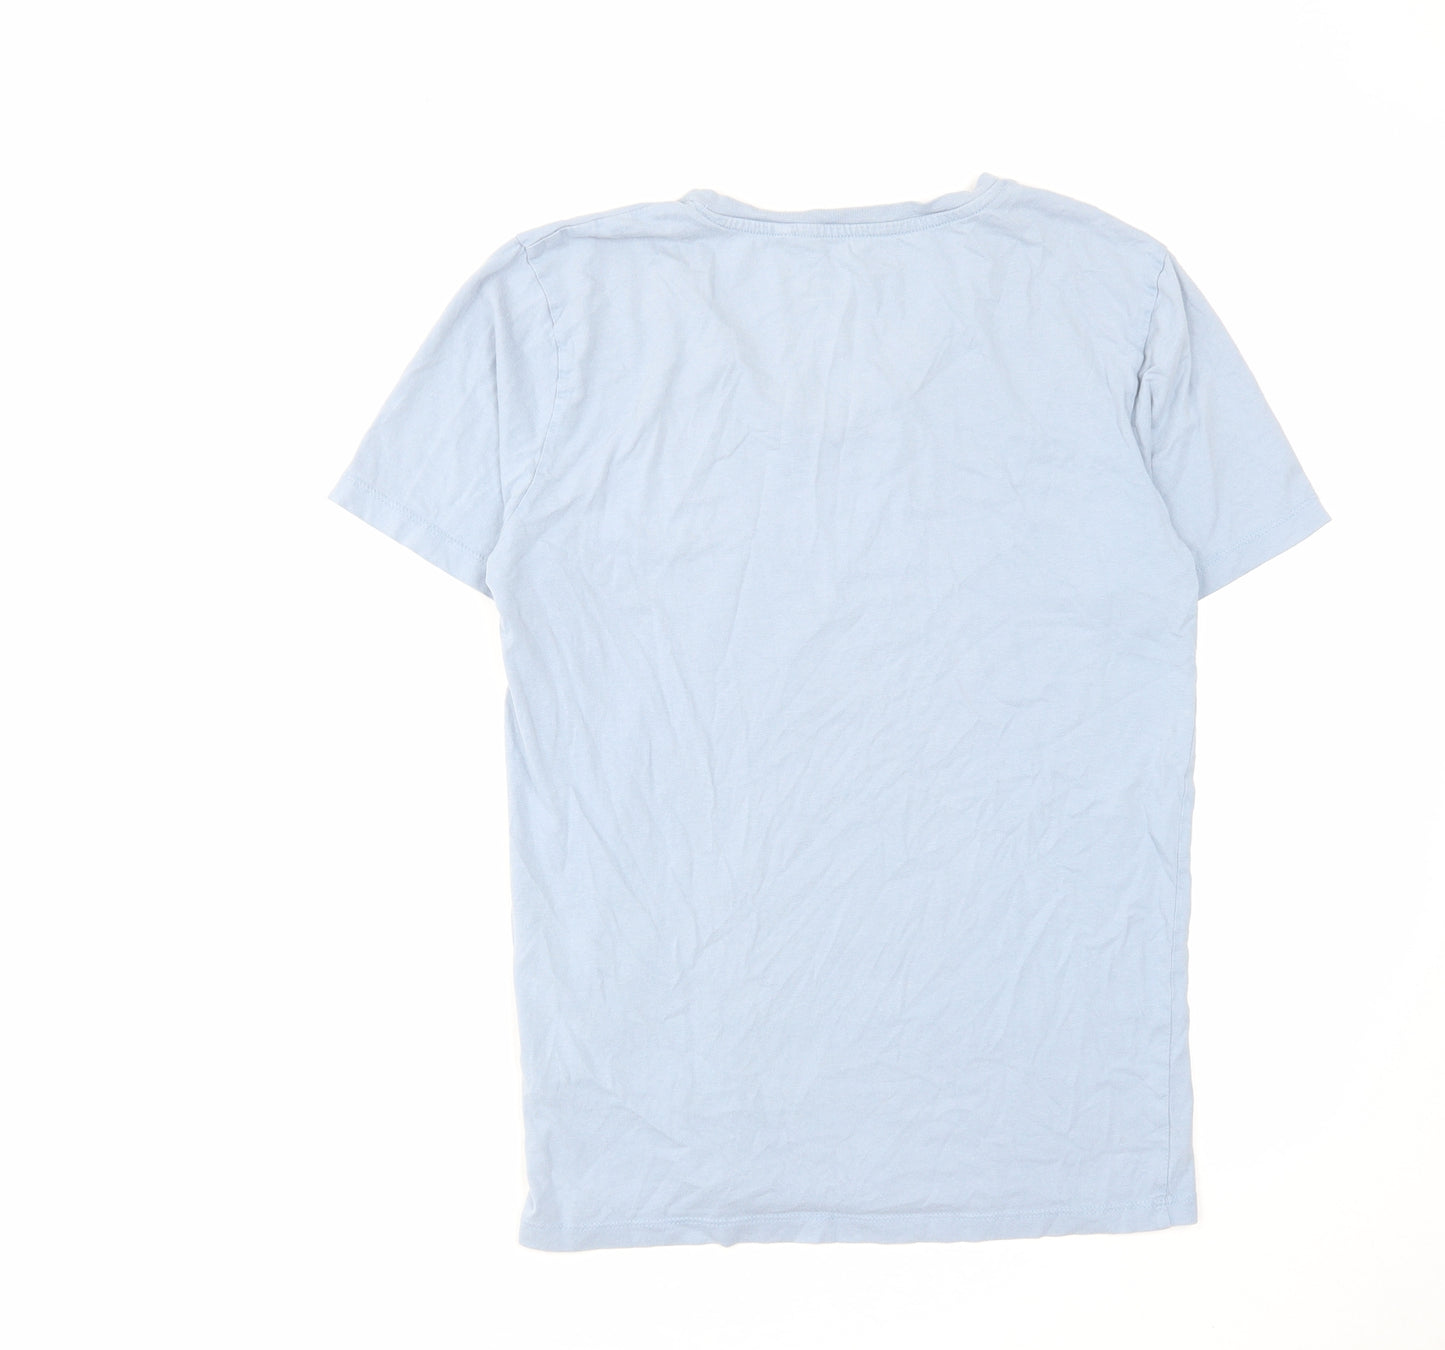 NEXT Mens Blue Cotton T-Shirt Size S V-Neck